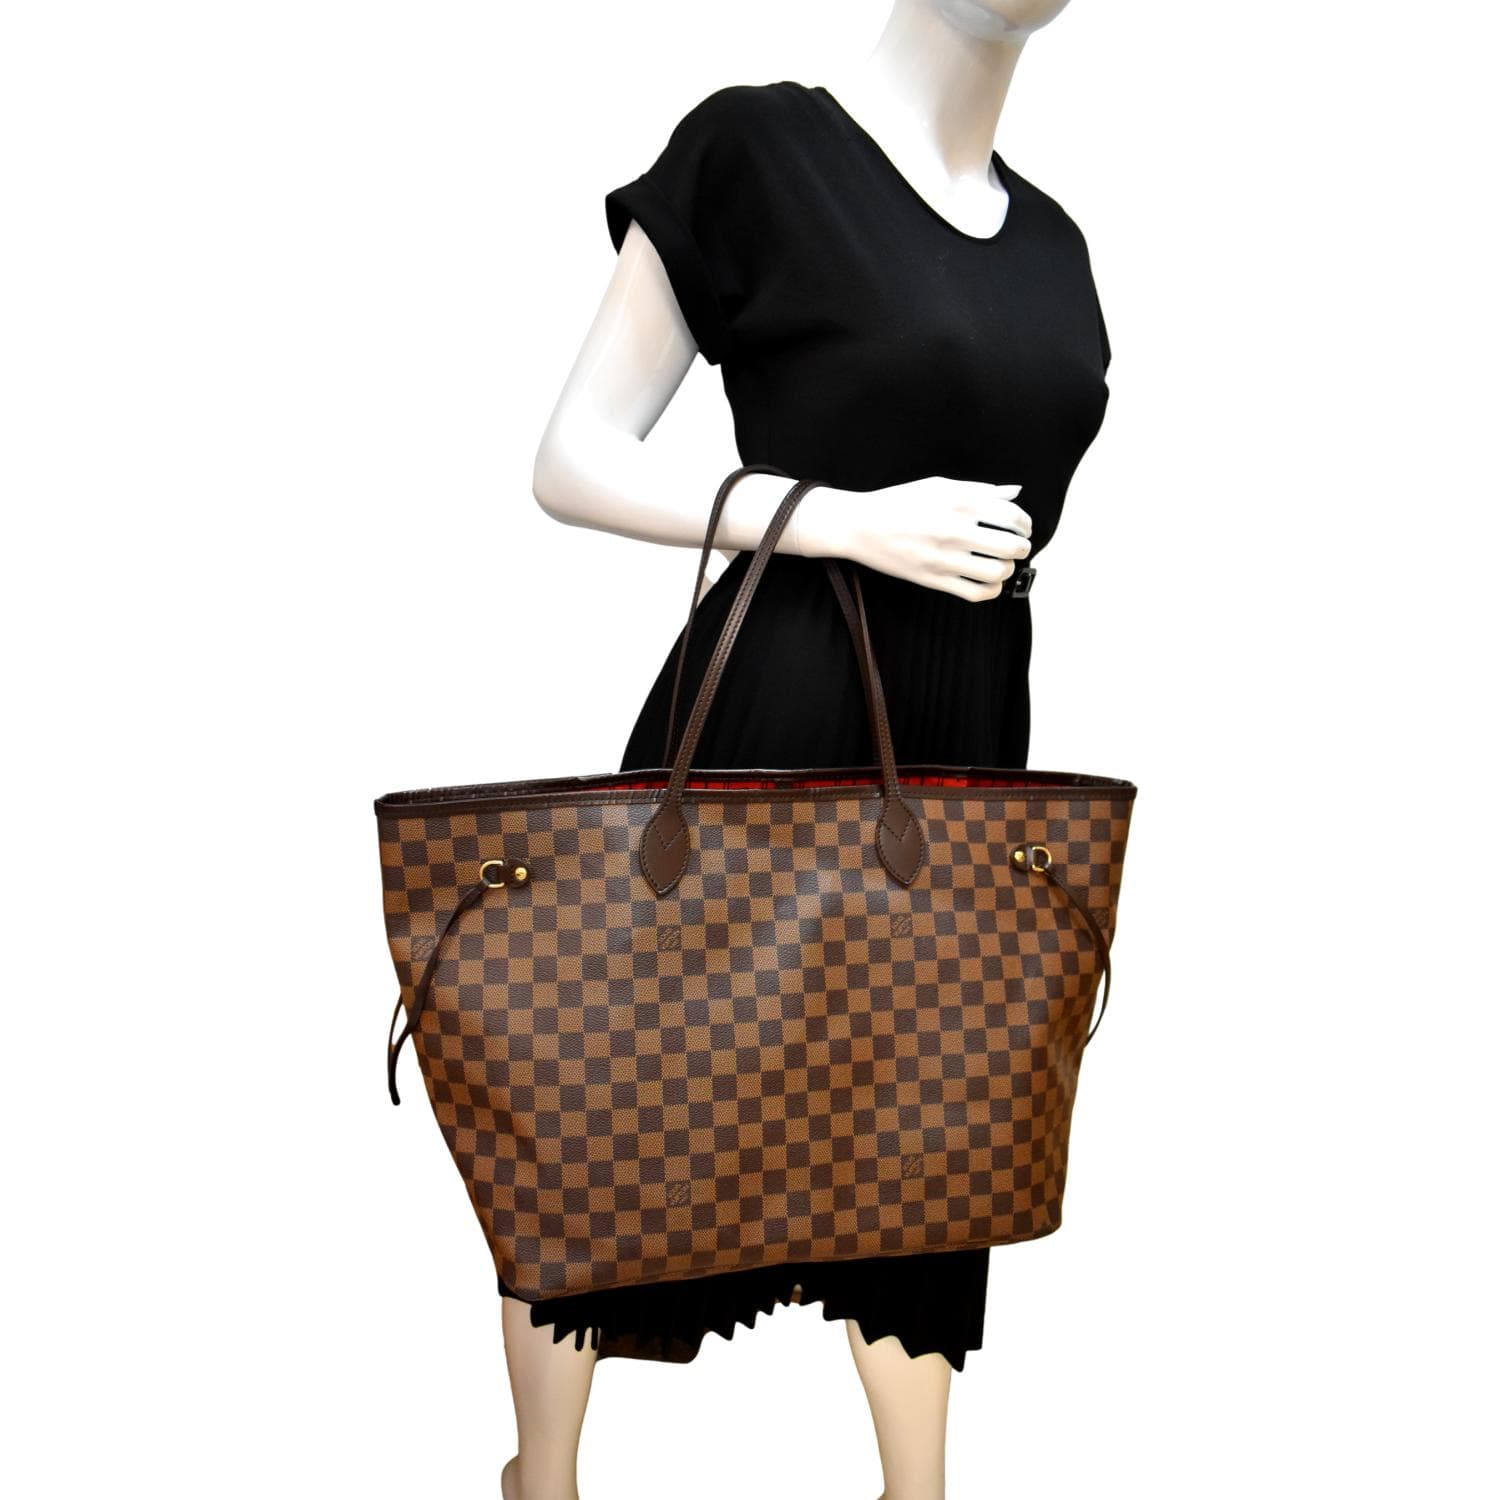 Neverfull GM Damier Ebene - Women - Handbags